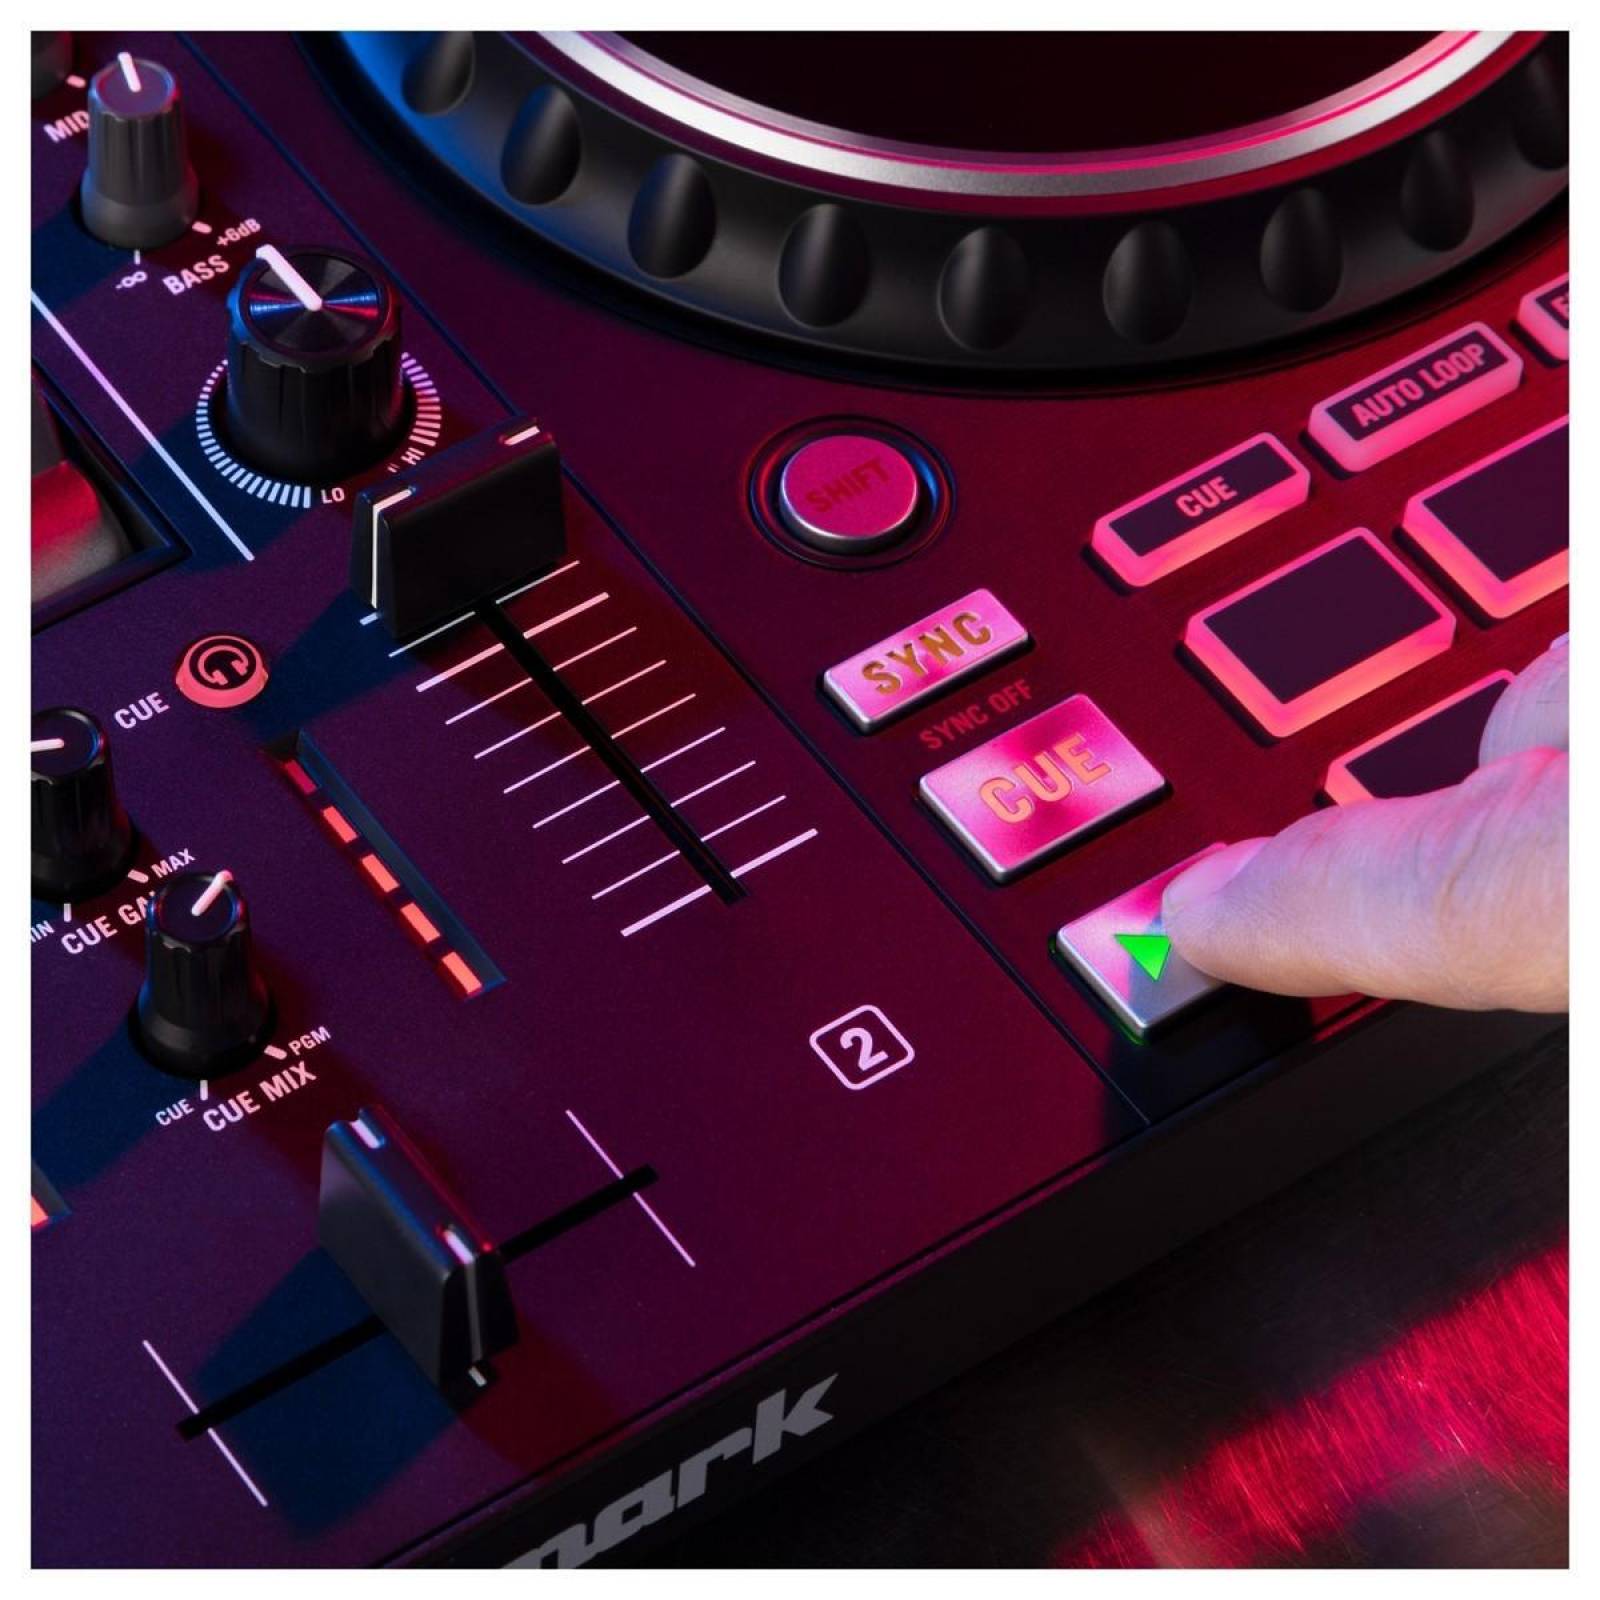 Mesa DJ Mixtrack Pro FX Numark